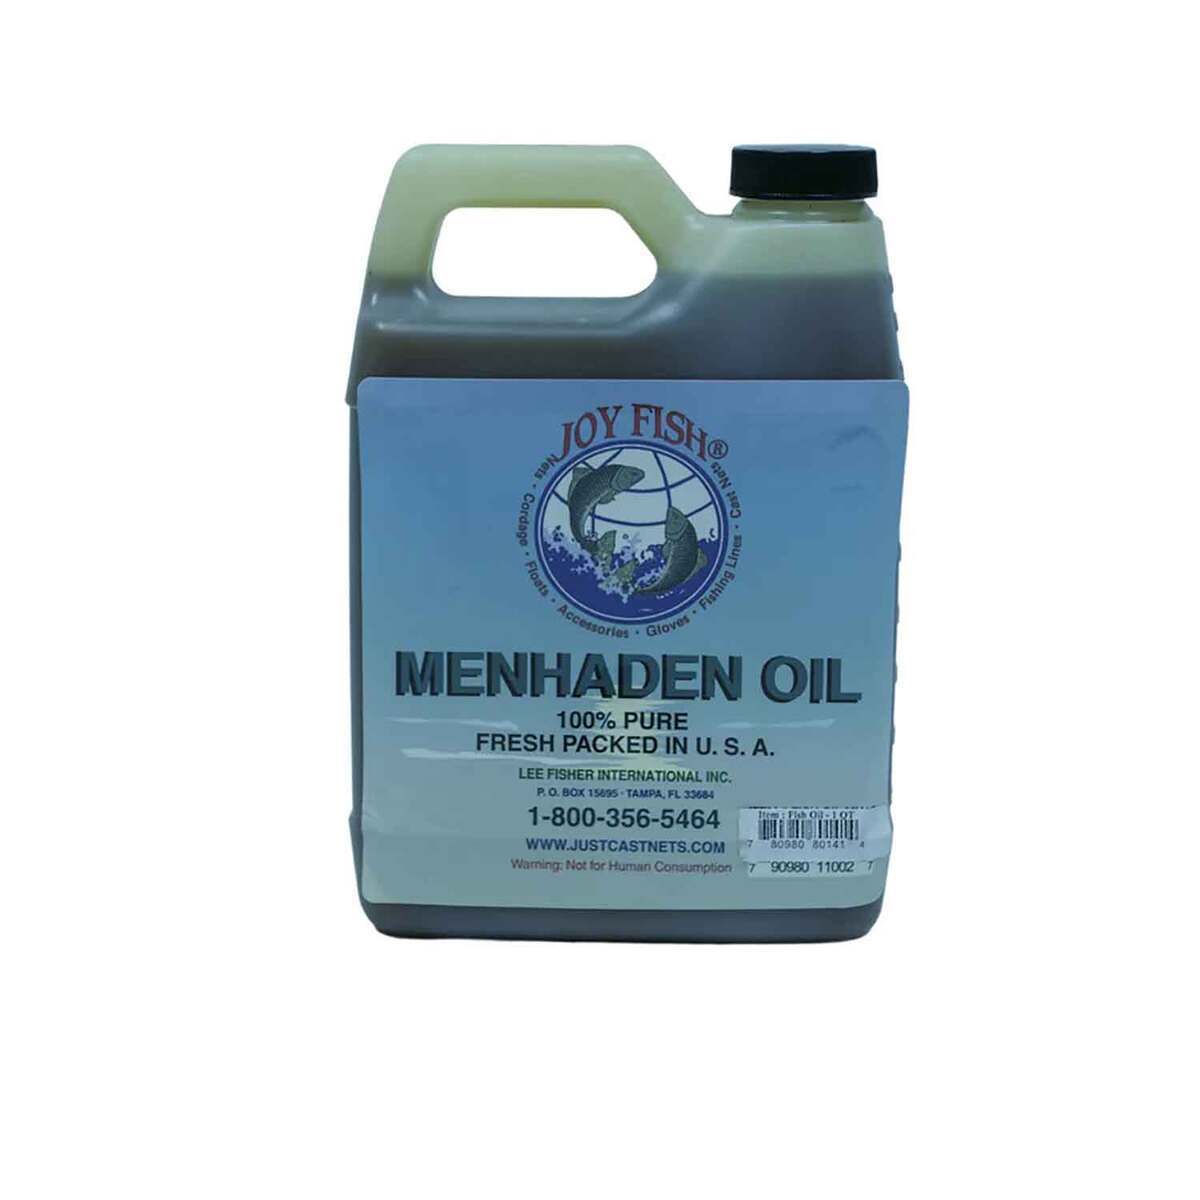 Joy Fish 100% Pure Menhaden Oil - Quart